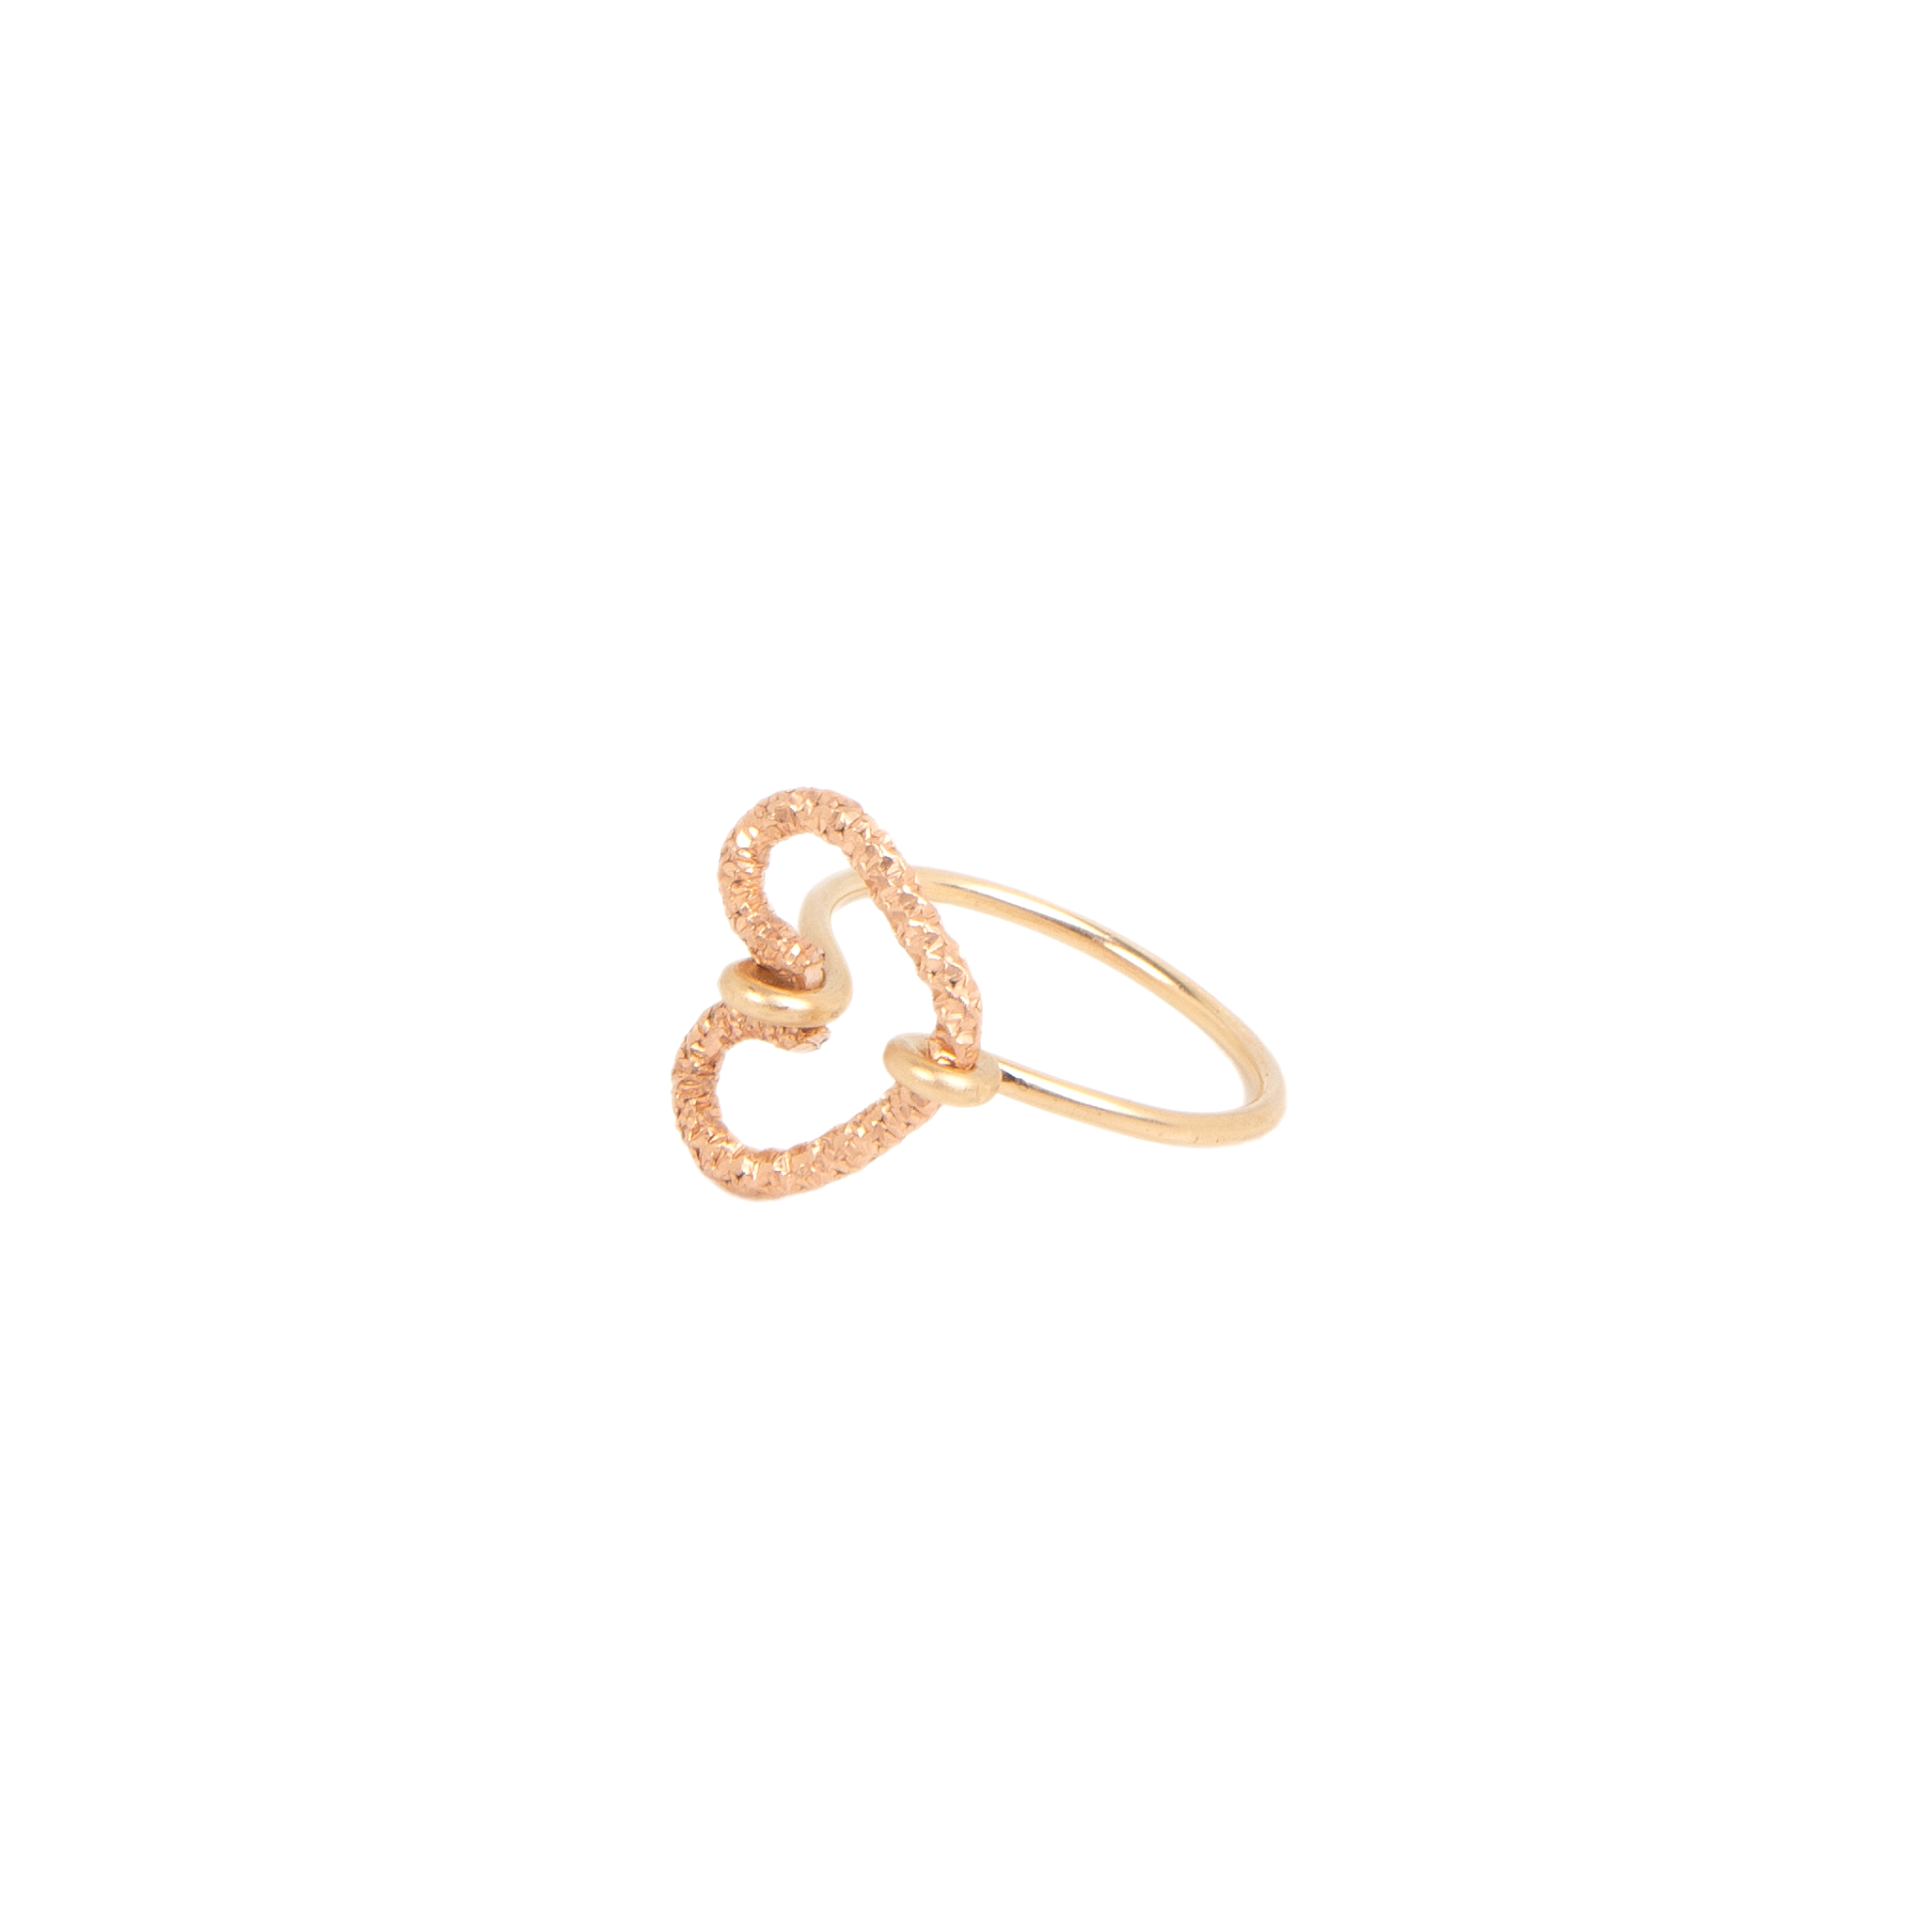 Corazon Ring #4 (15mm) - Yellow & Rose Gold Rings TARBAY   